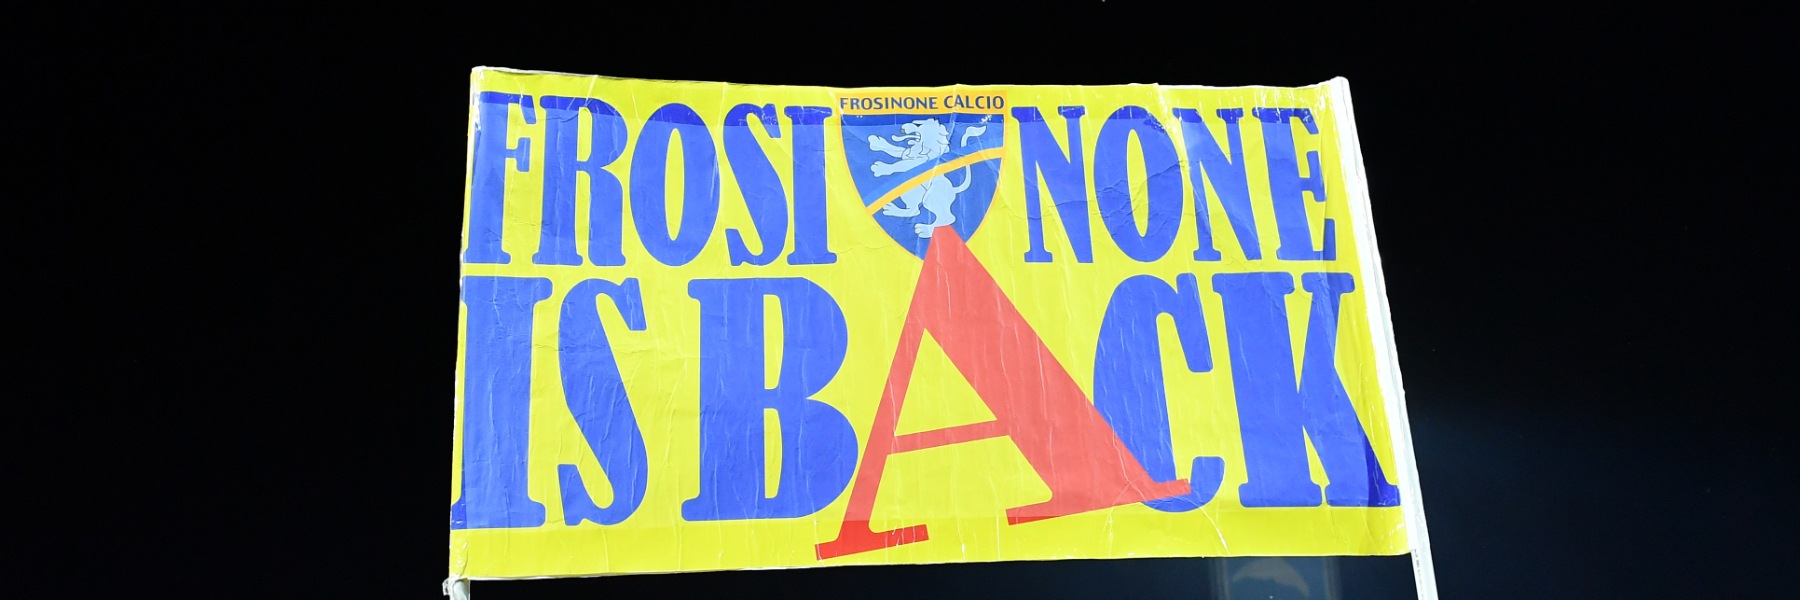 Frosinone-Palermo: lo scandalo della serie B